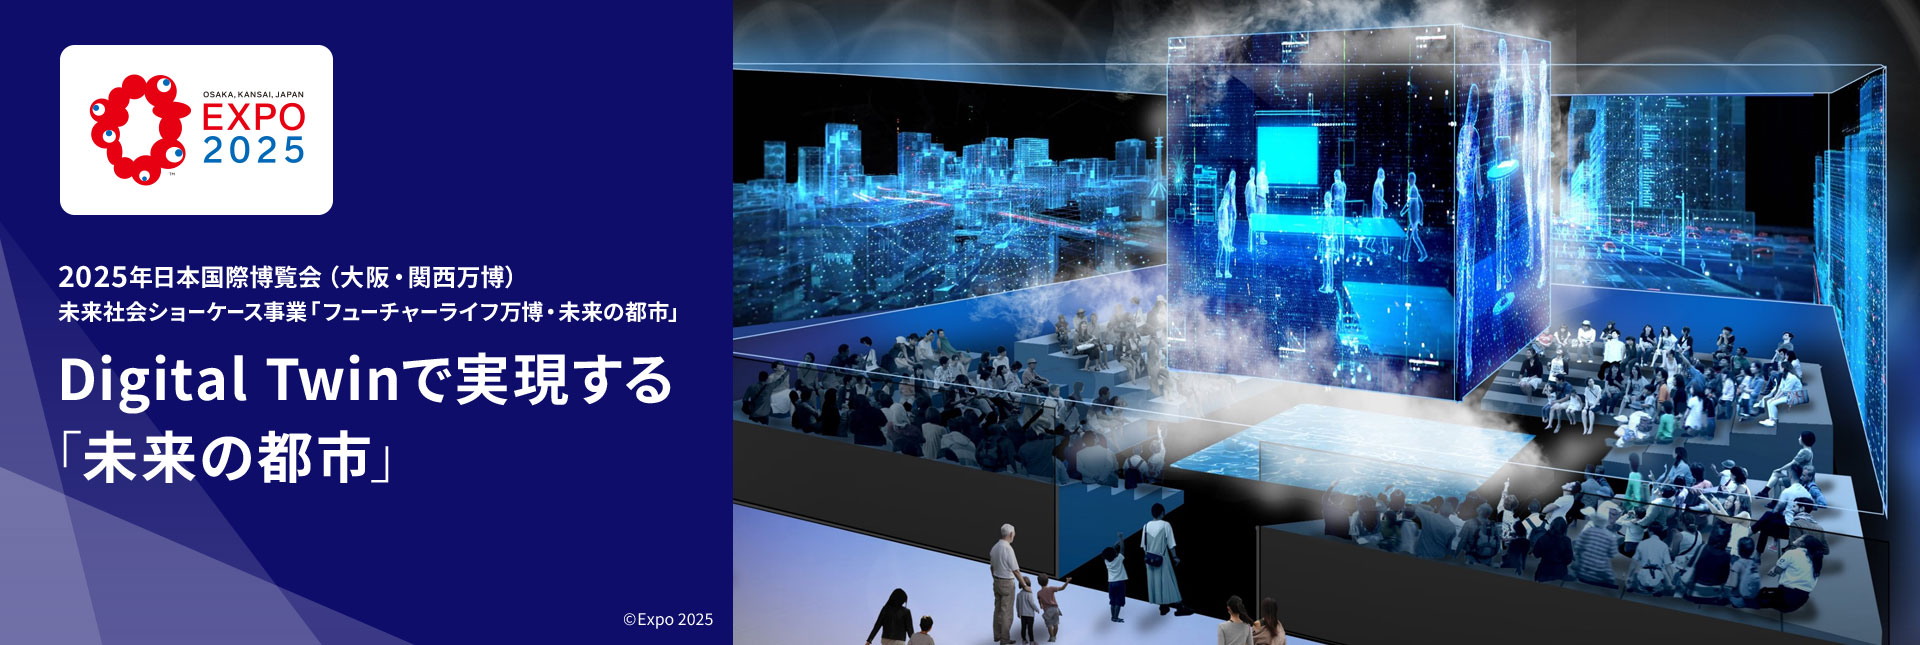 2025年日本国際博覧会（大阪・関西万博） 未来社会ショーケース事業「フューチャーライフ万博・未来の都市」 Digital Twinで実現する「未来の都市」 ©Expo 2025